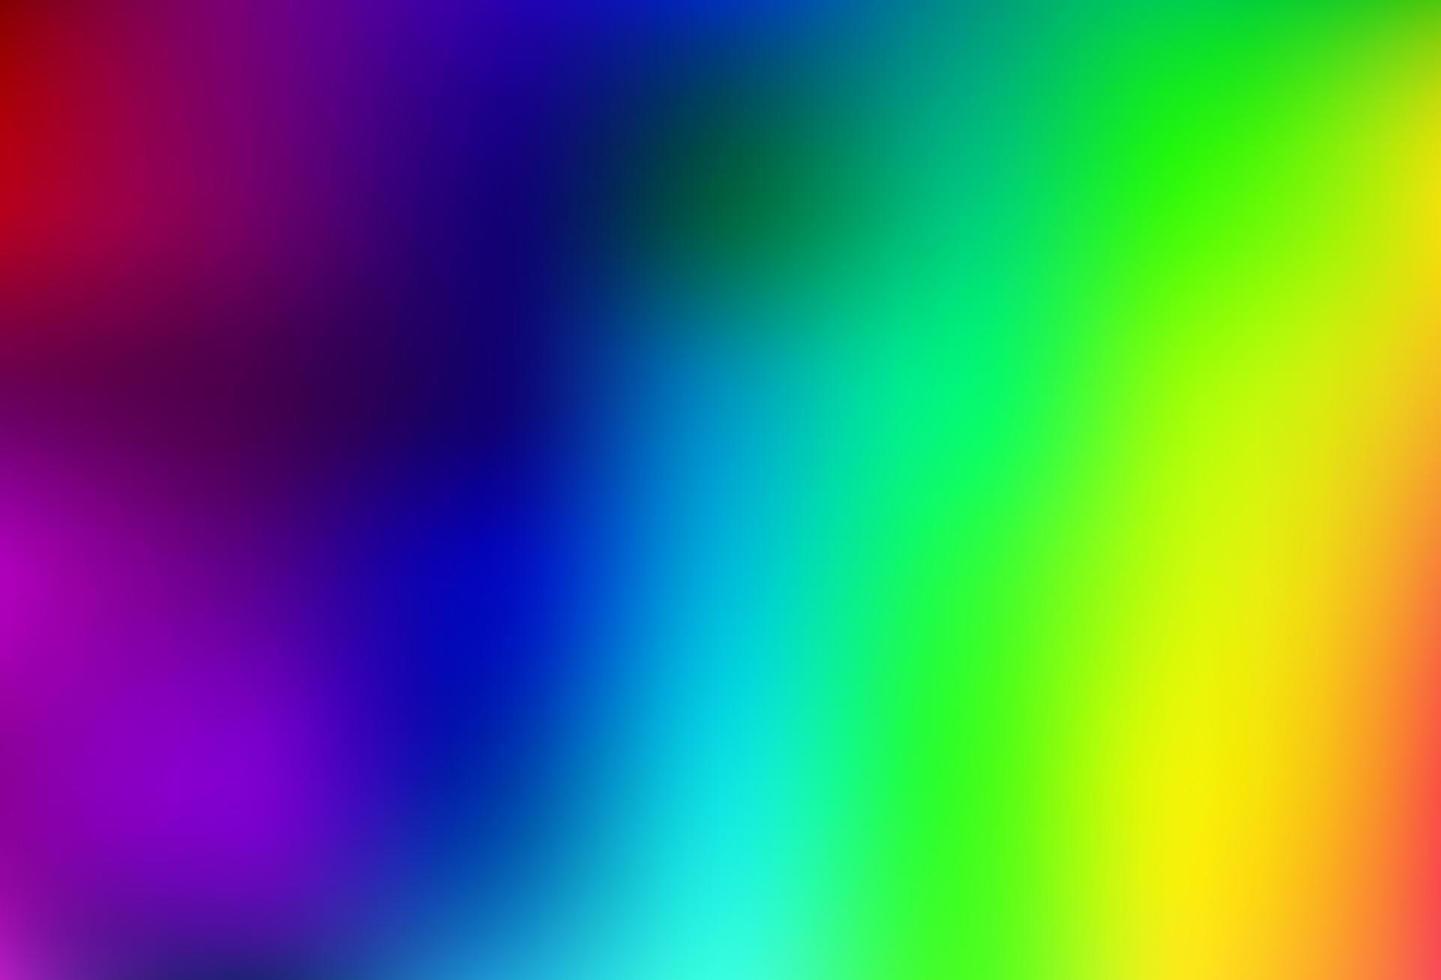 luz multicolor, vetor de arco-íris turva fundo abstrato de brilho.